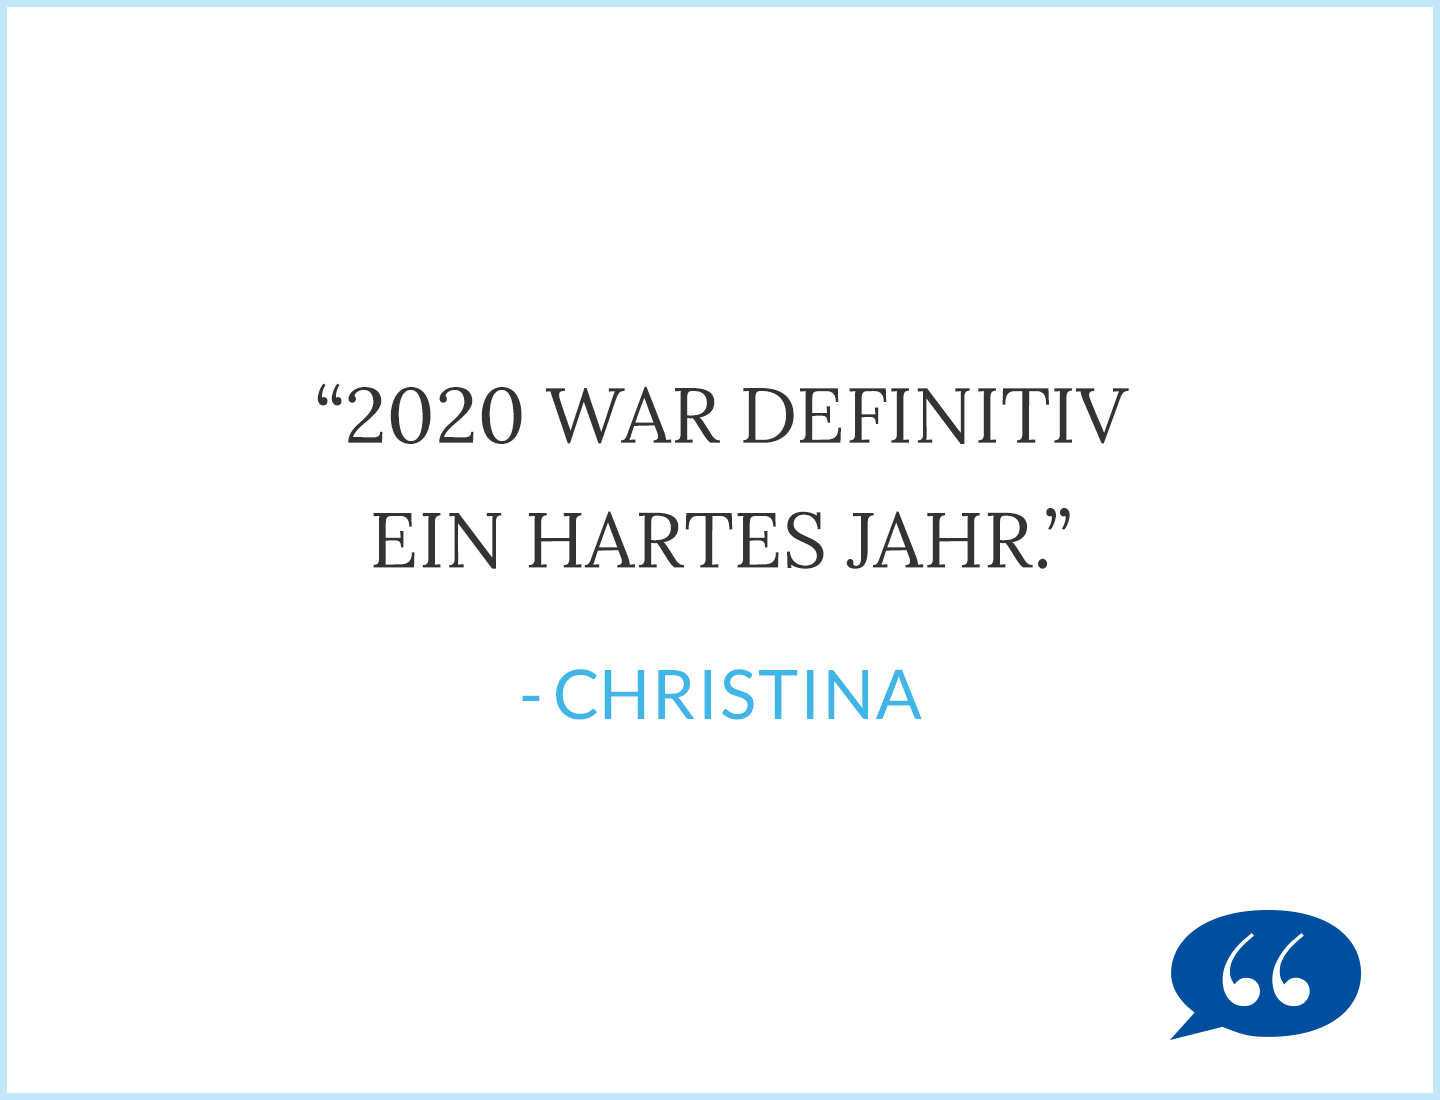 Zitat: 202 war definitiv ein hartes Jahr. - Christina